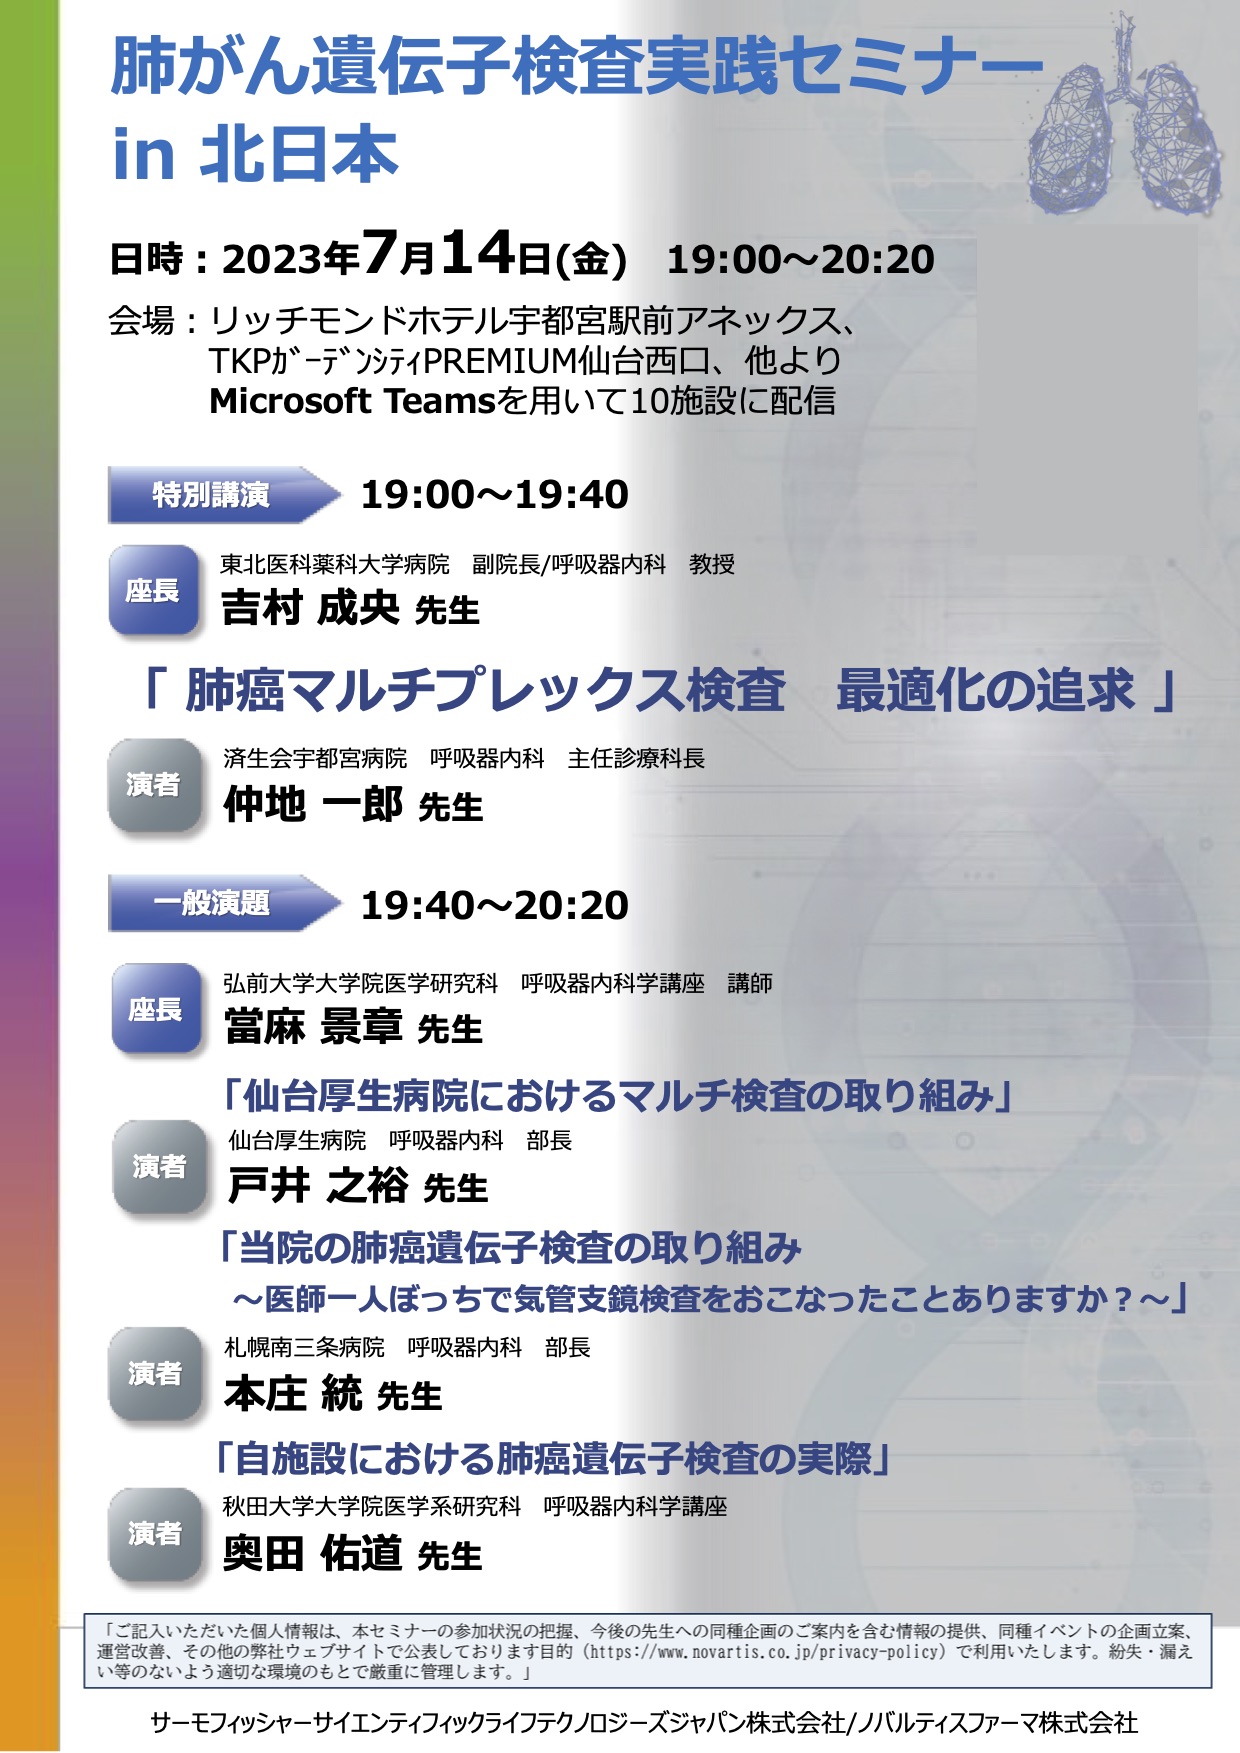 肺がん遺伝子検査実践セミナー in 北日本 7月14日（金） - 秋田大学 